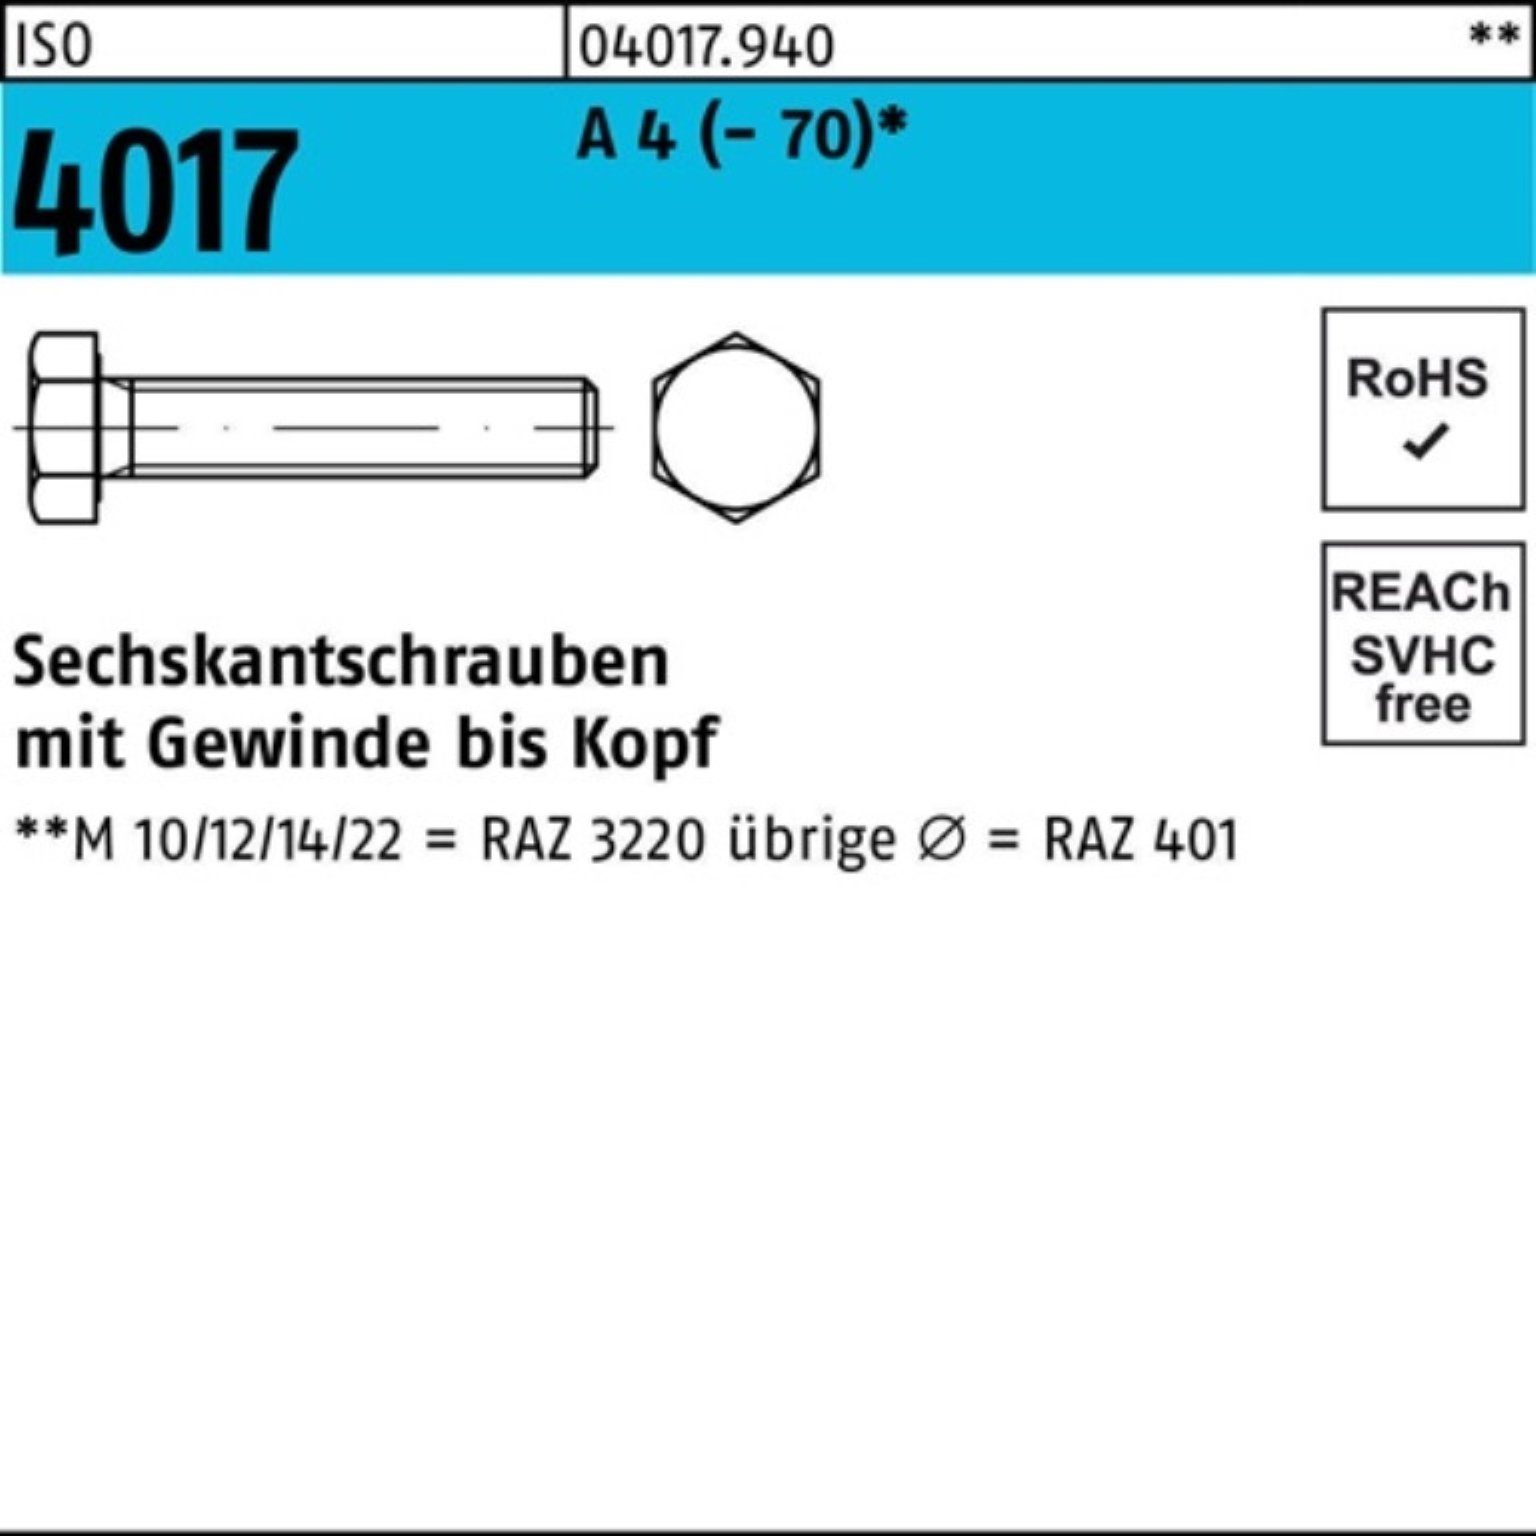 Bufab Sechskantschraube 100er Pack Sechskantschraube ISO 4017 VG M8x 180 A 4 (70) 1 Stück I